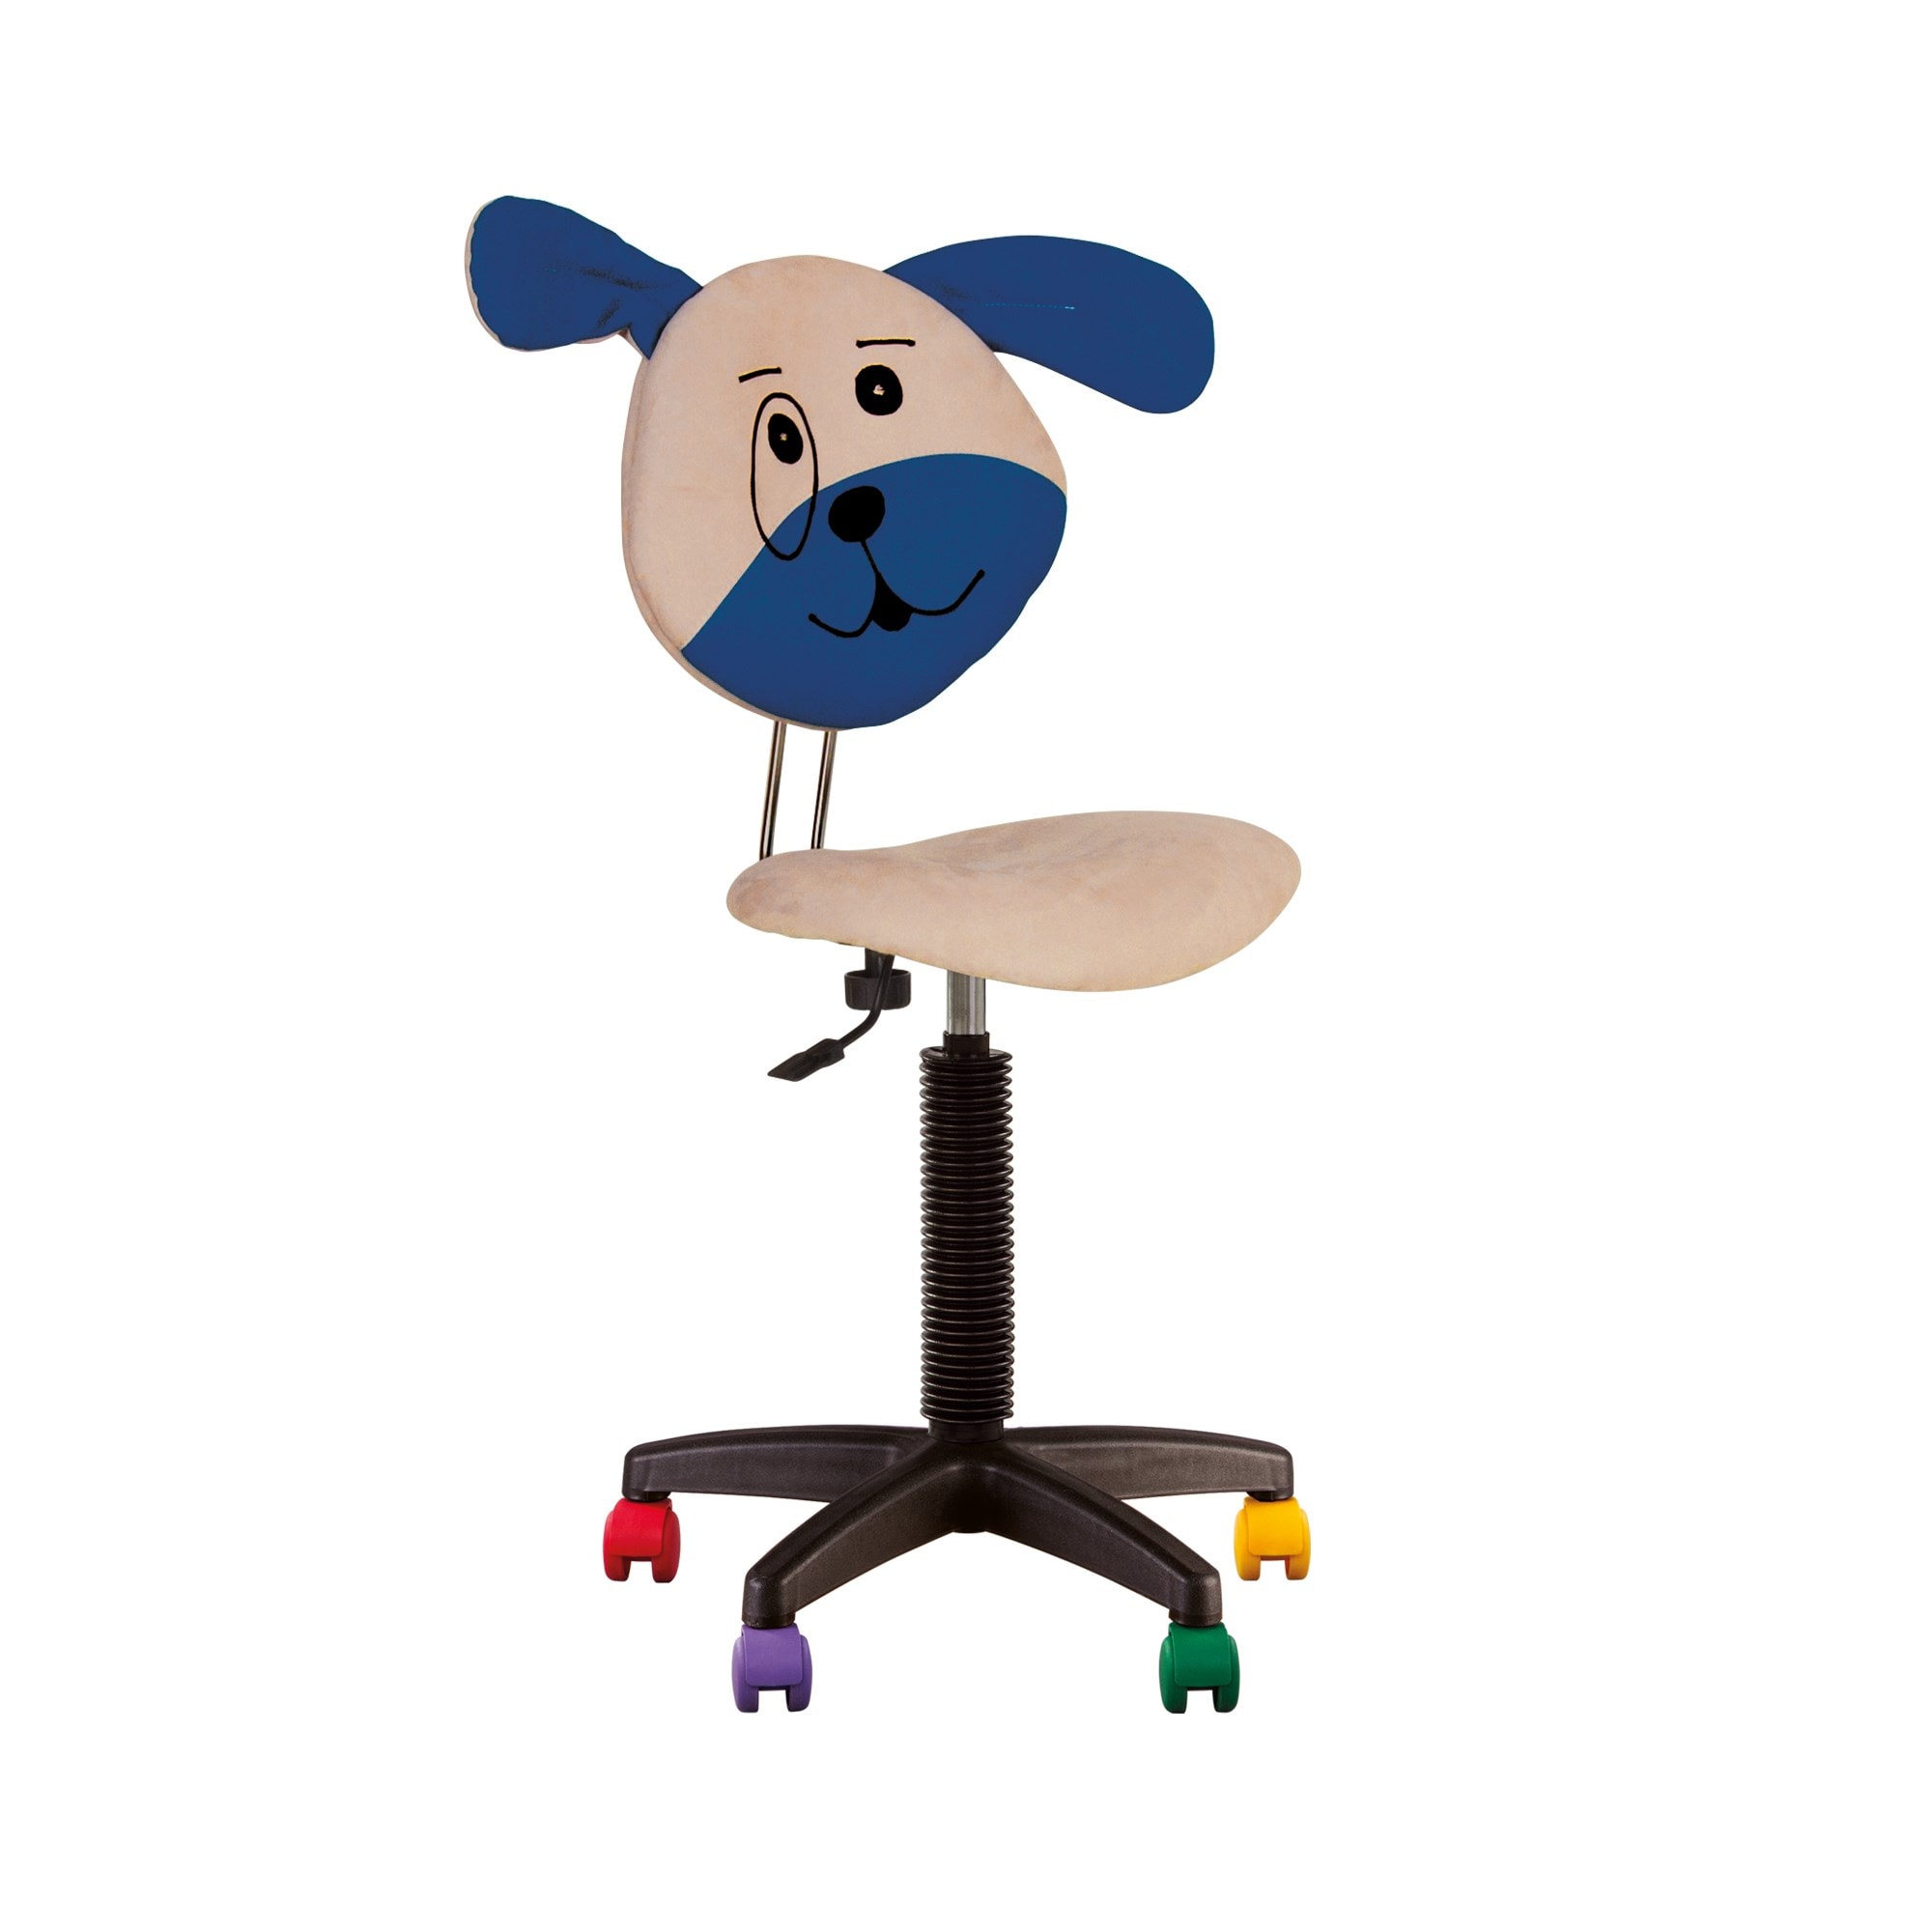 Fauteuil jouet chien, chaise de bureau pour enfant. Beige. CHAISE